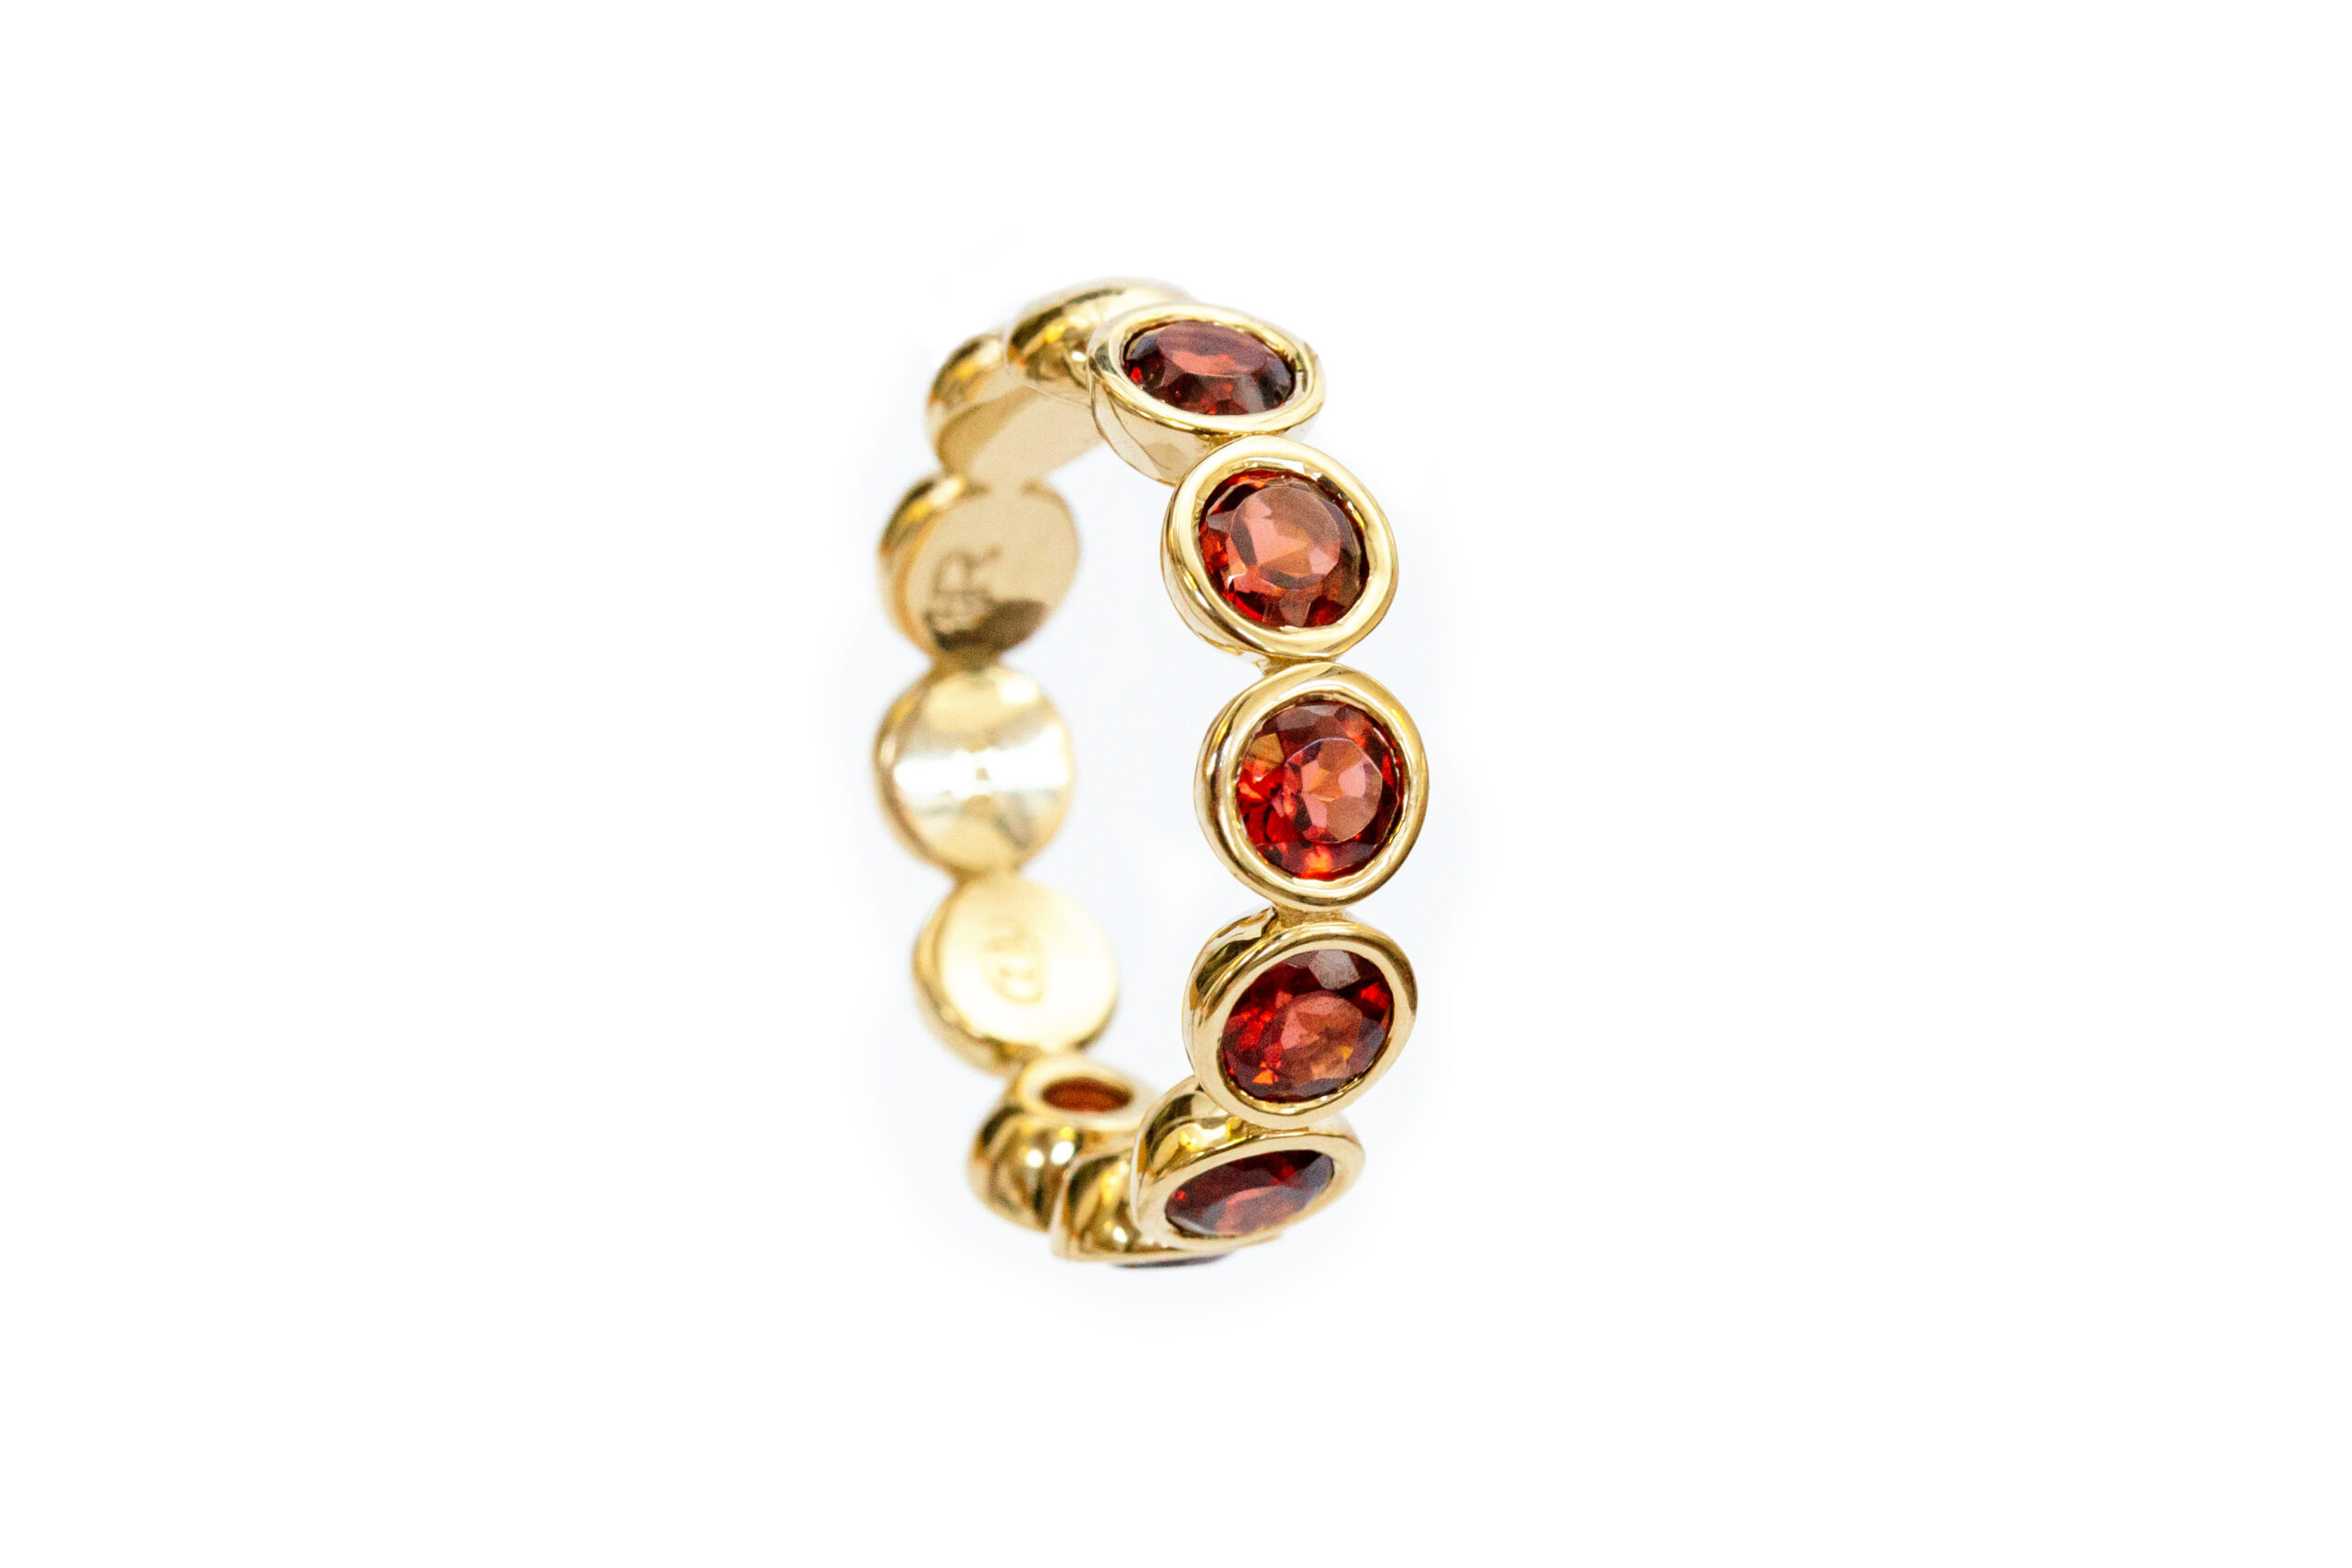 9ct Gold Garnet Ring